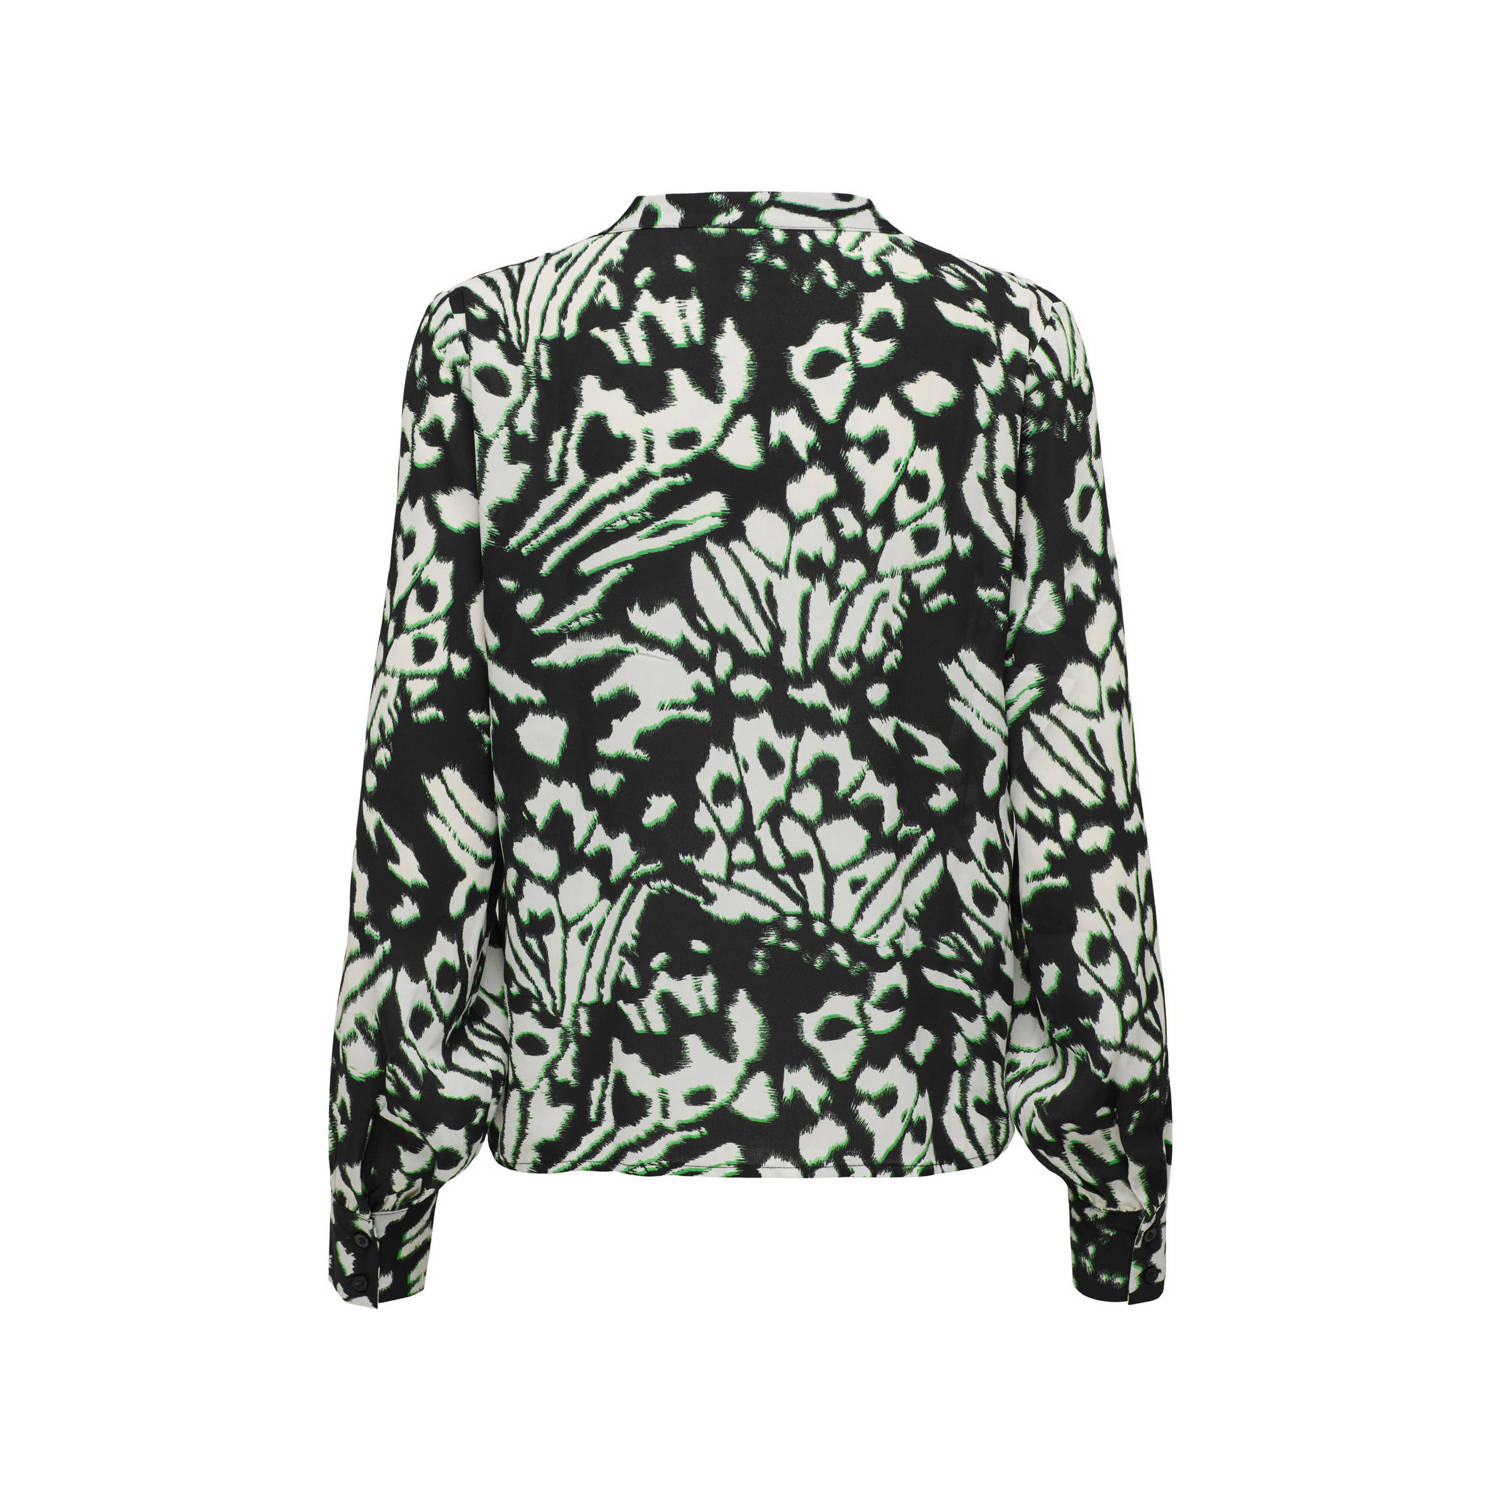 JDY LESLEY blousetop met all over print zwart wit groen